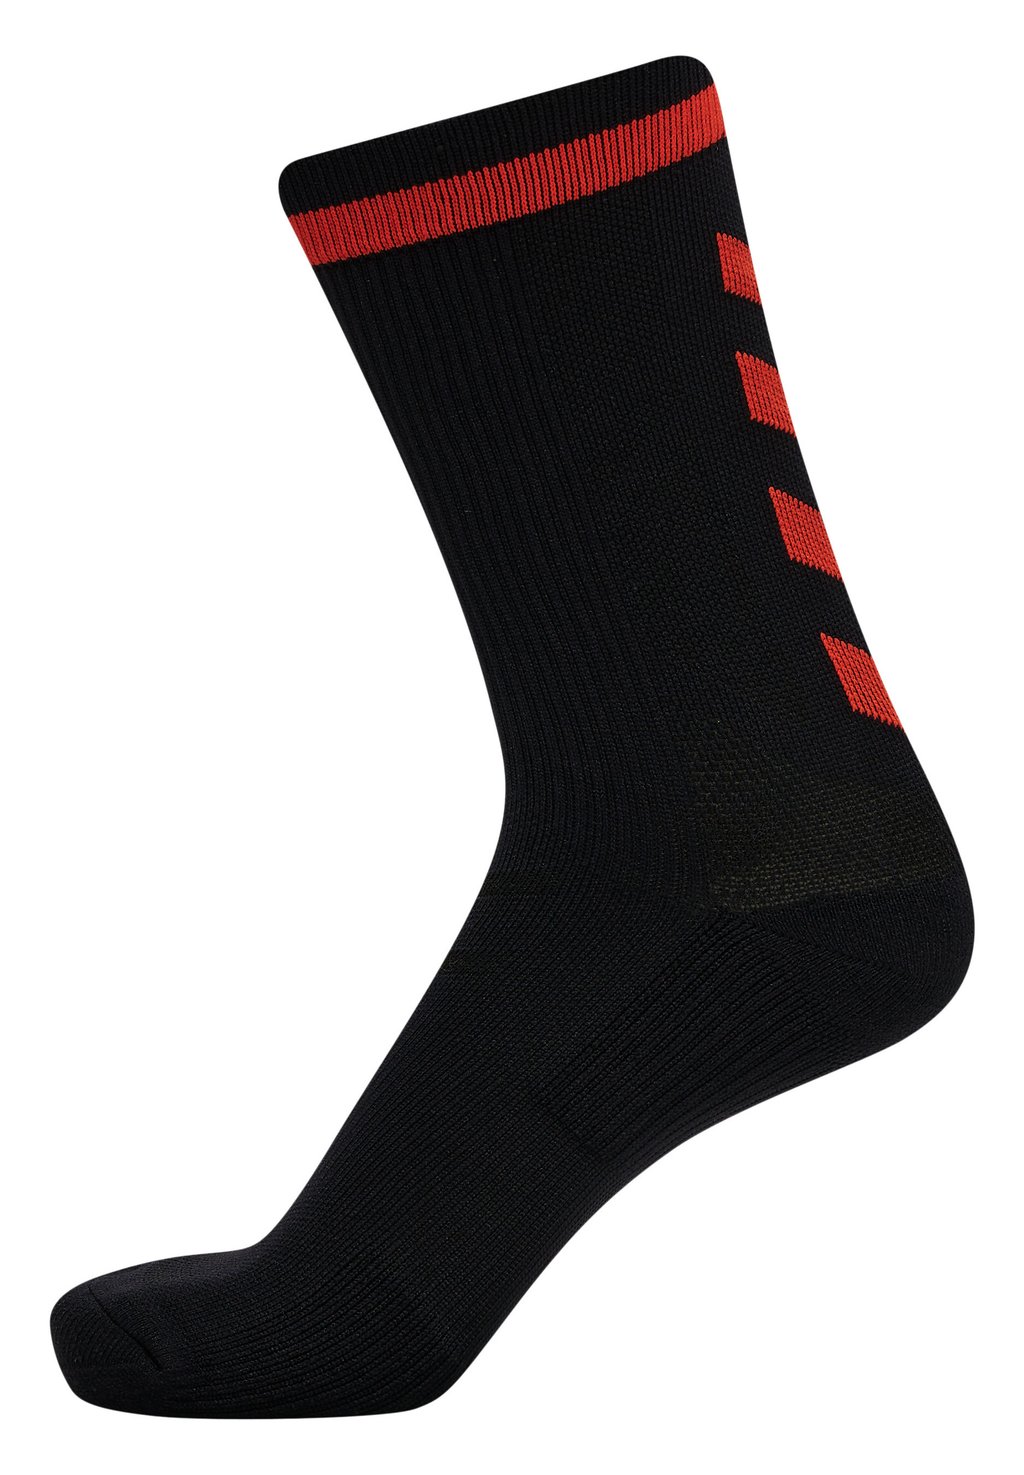 Спортивные носки ELITE INDOOR LOW PA Hummel, цвет black cherry tomato